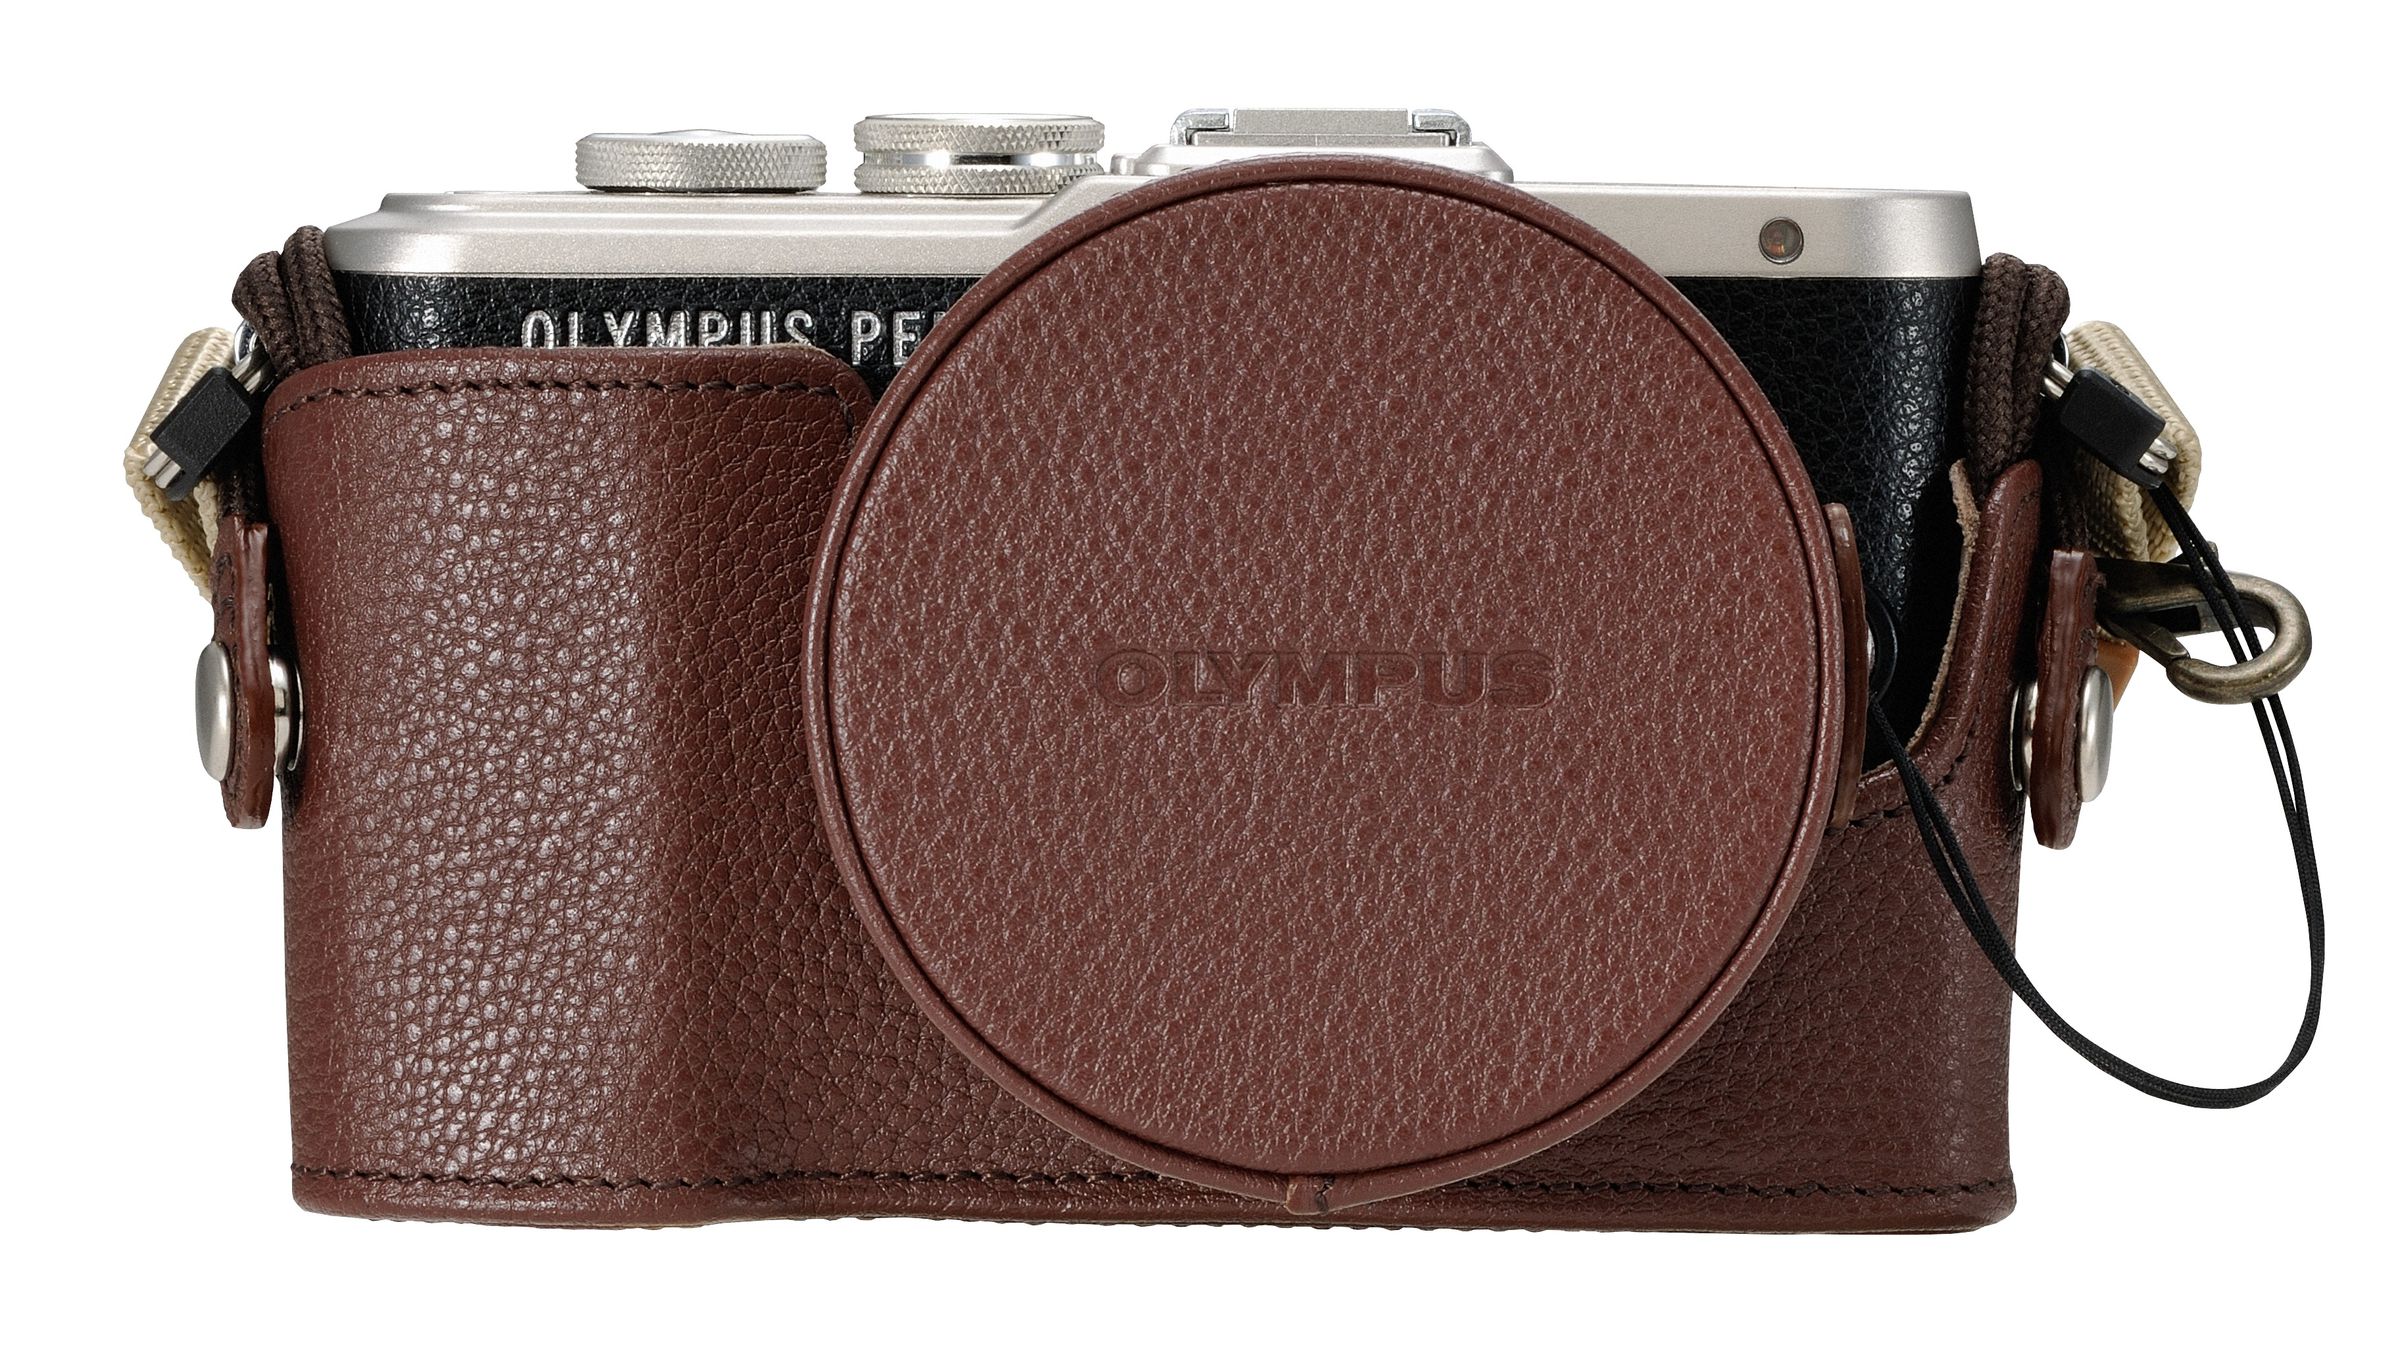 Olympus E-PL8 in photos